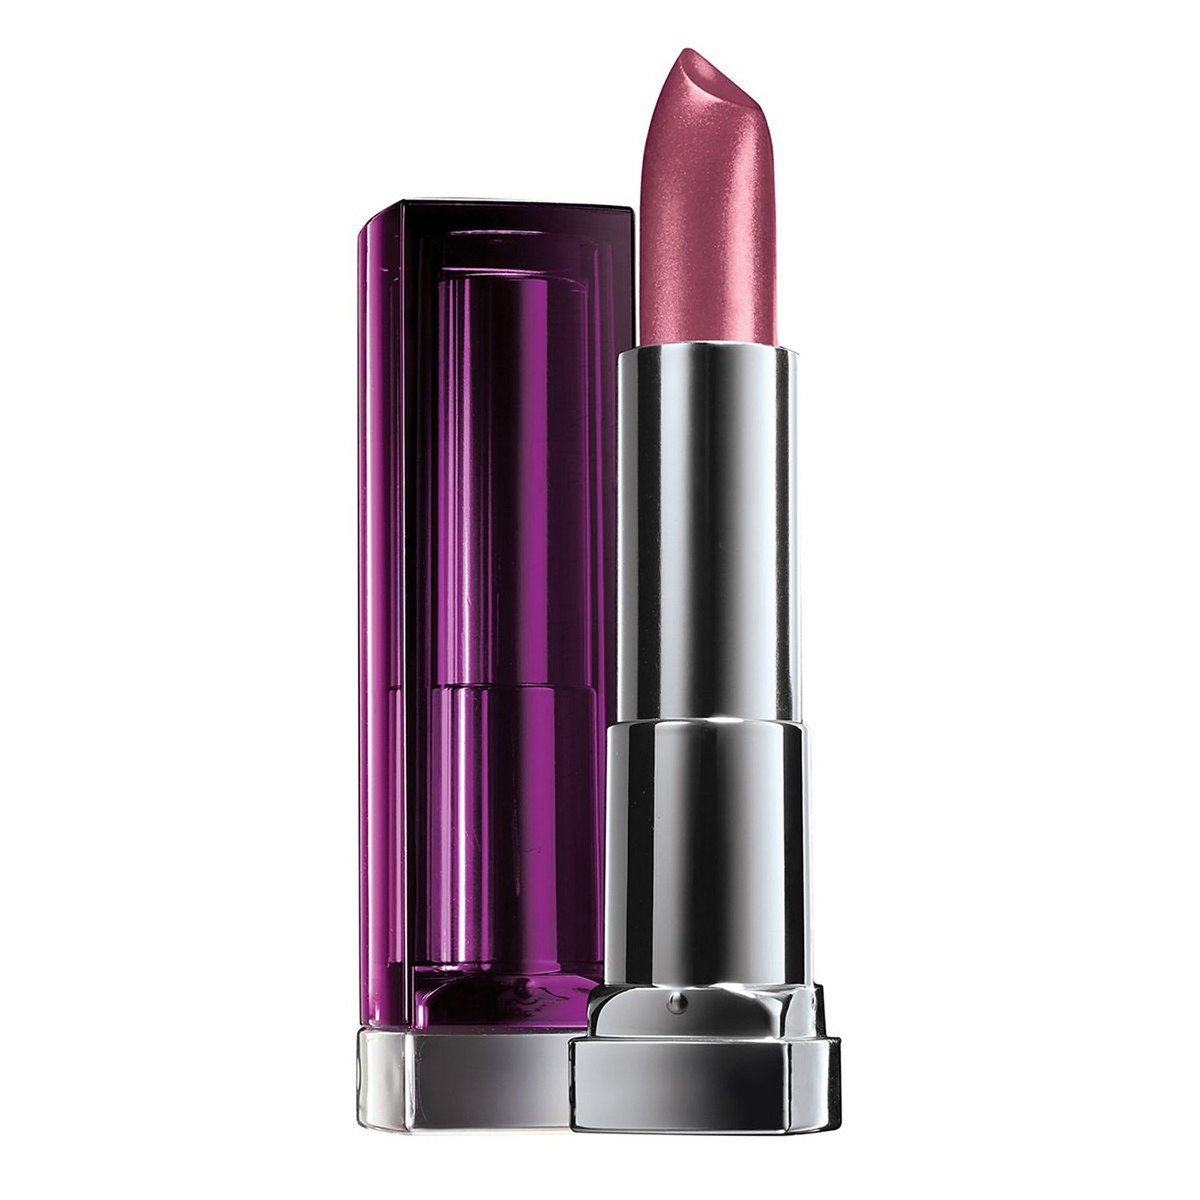 Maybelline Color Sensational Classics Lipstick 315 Rich Plum 1pc